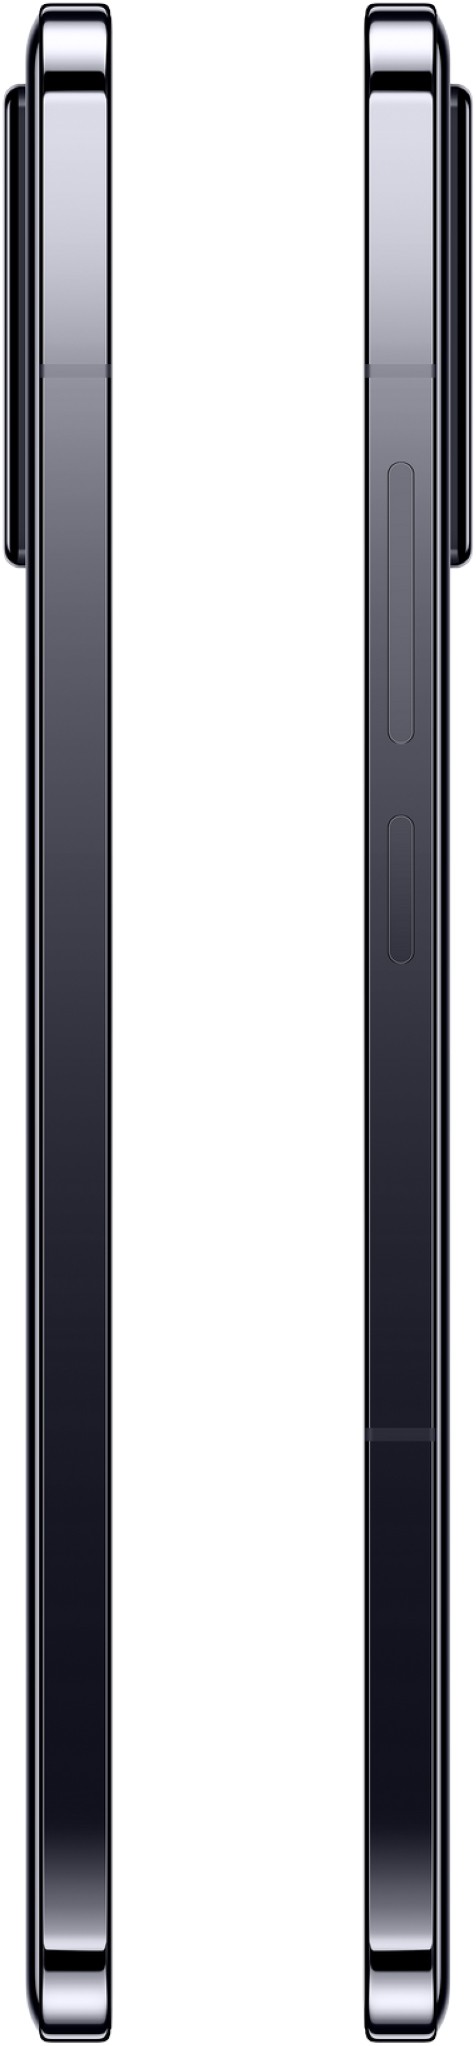 XIAOMI Smartphone Xiaomi 13 5G 256Go Noir - XIAOMI-13-8-256-NOIR